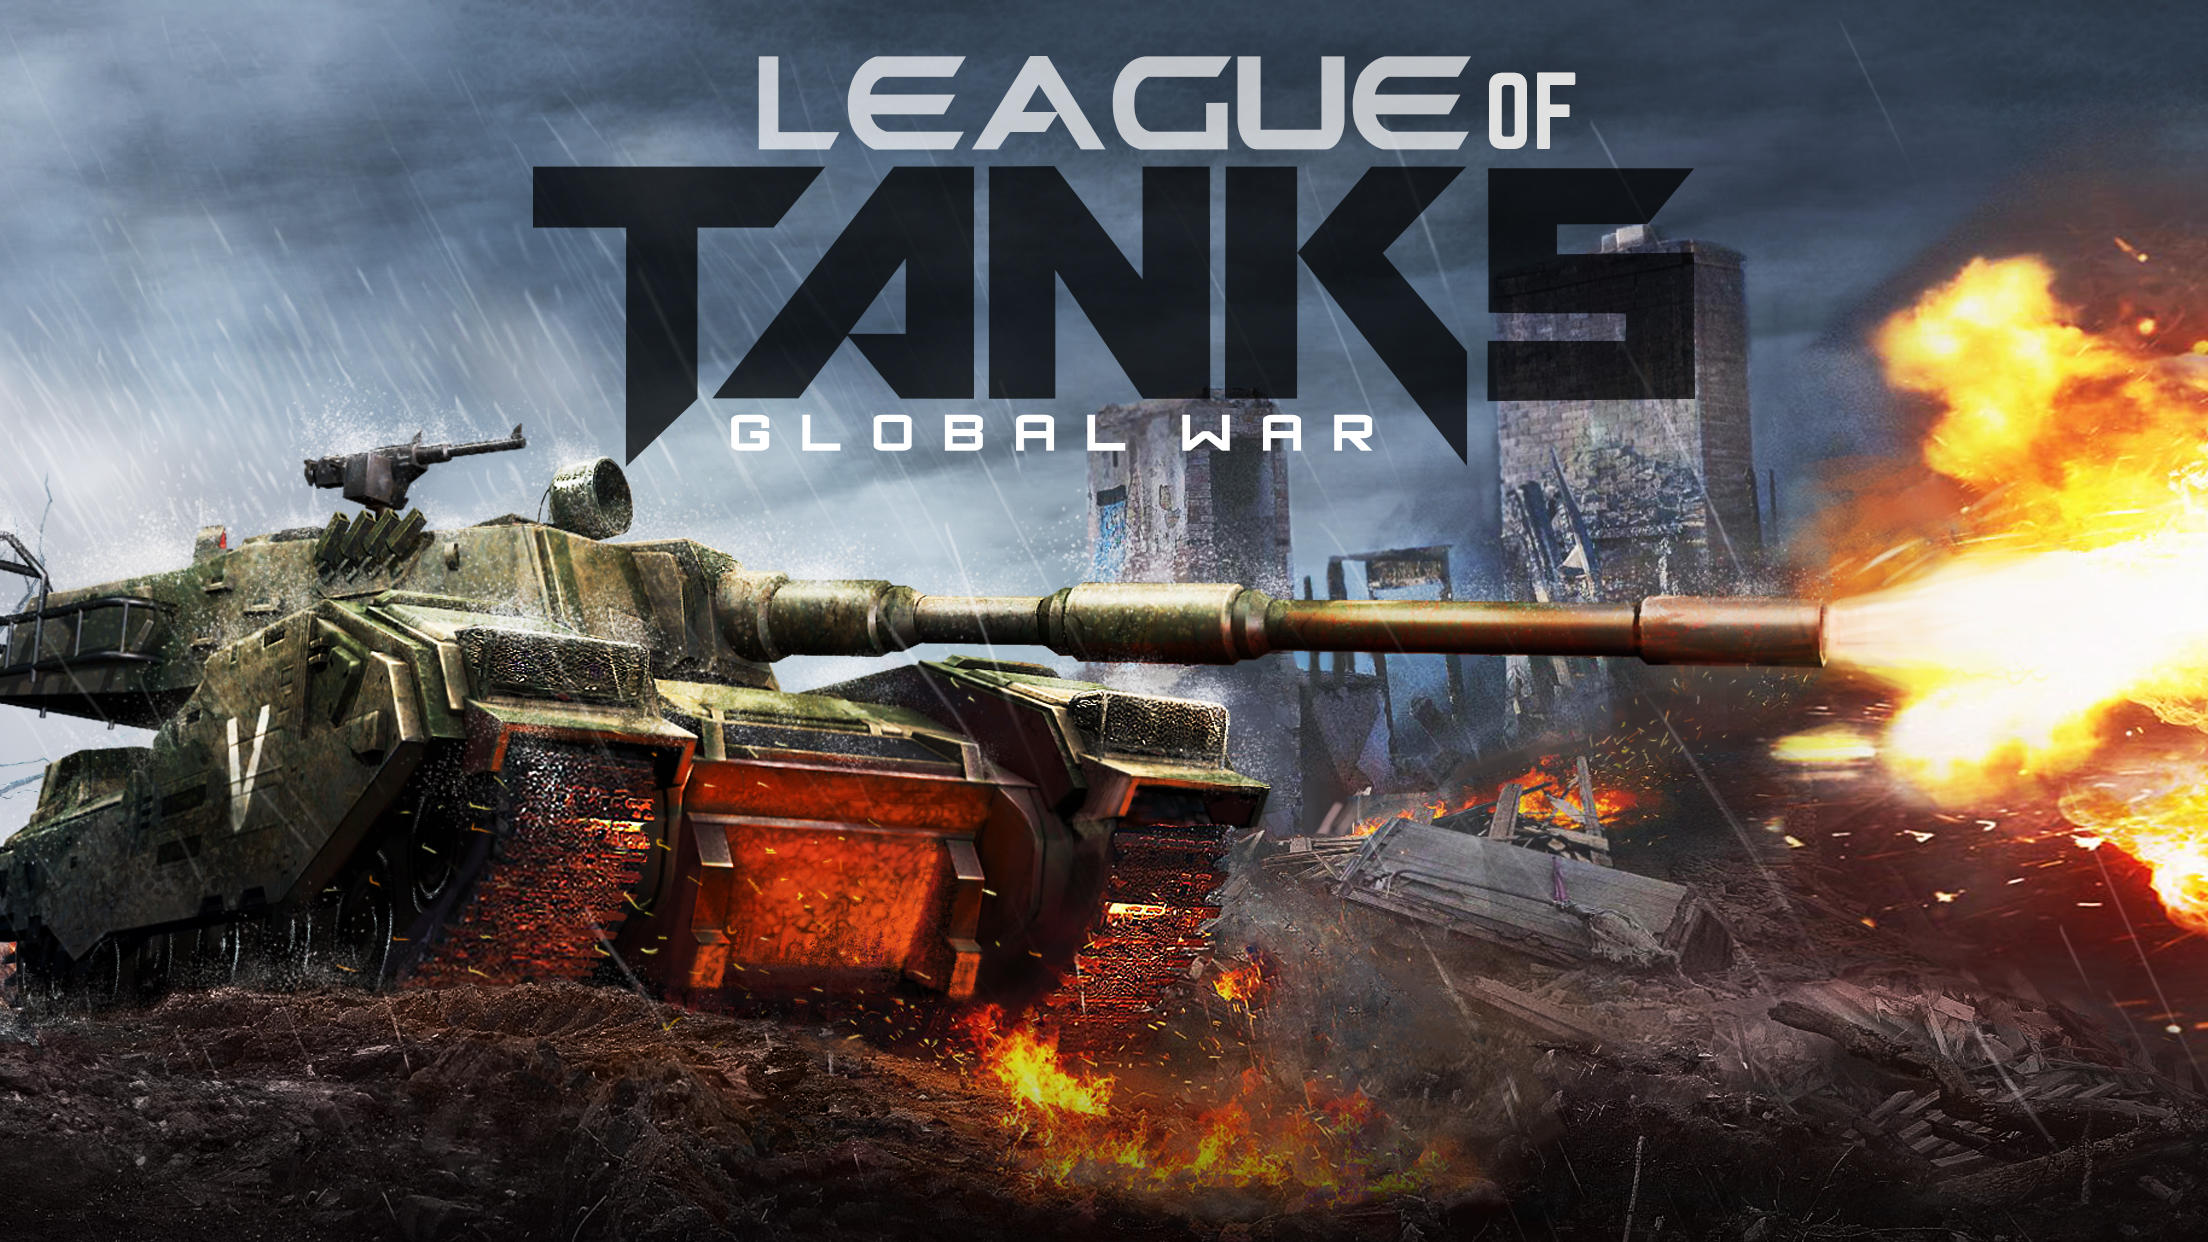 Screenshot 1 of Guerra globale di League of Tanks 